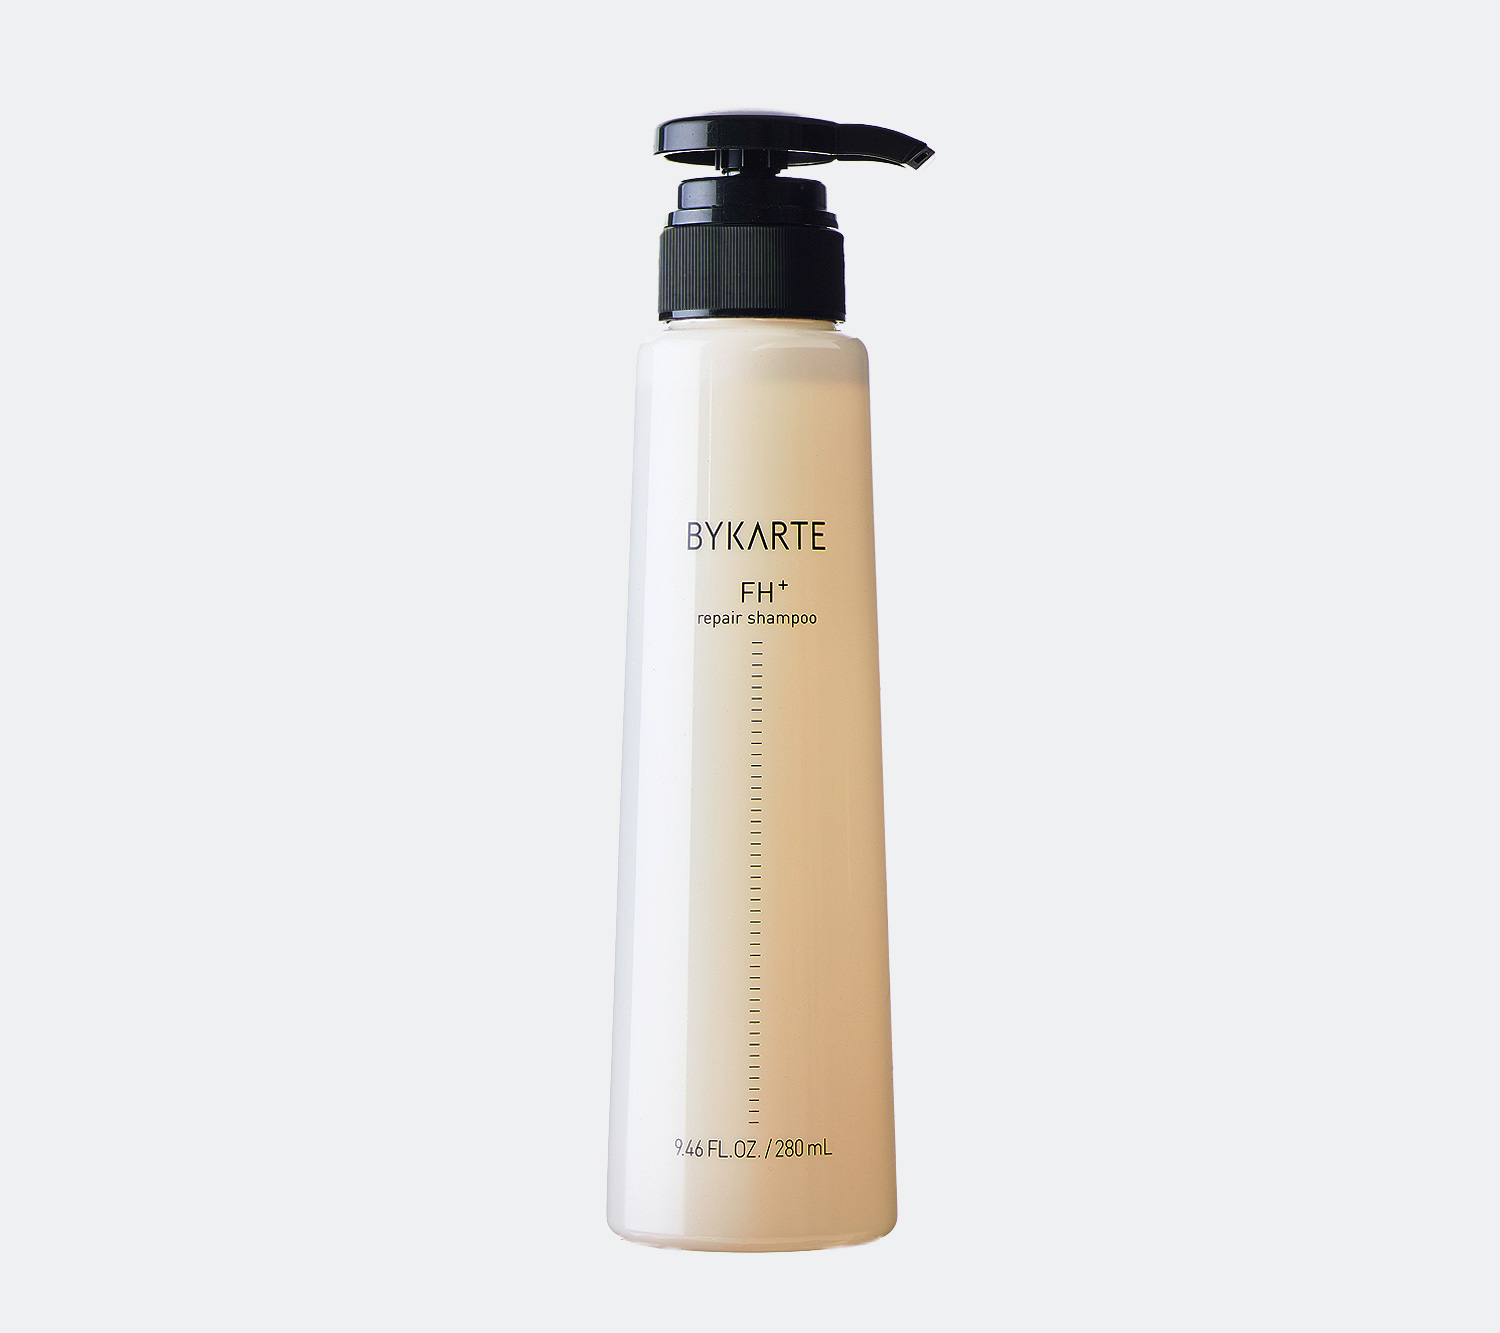 BYKARTE FH+ repair shampoo